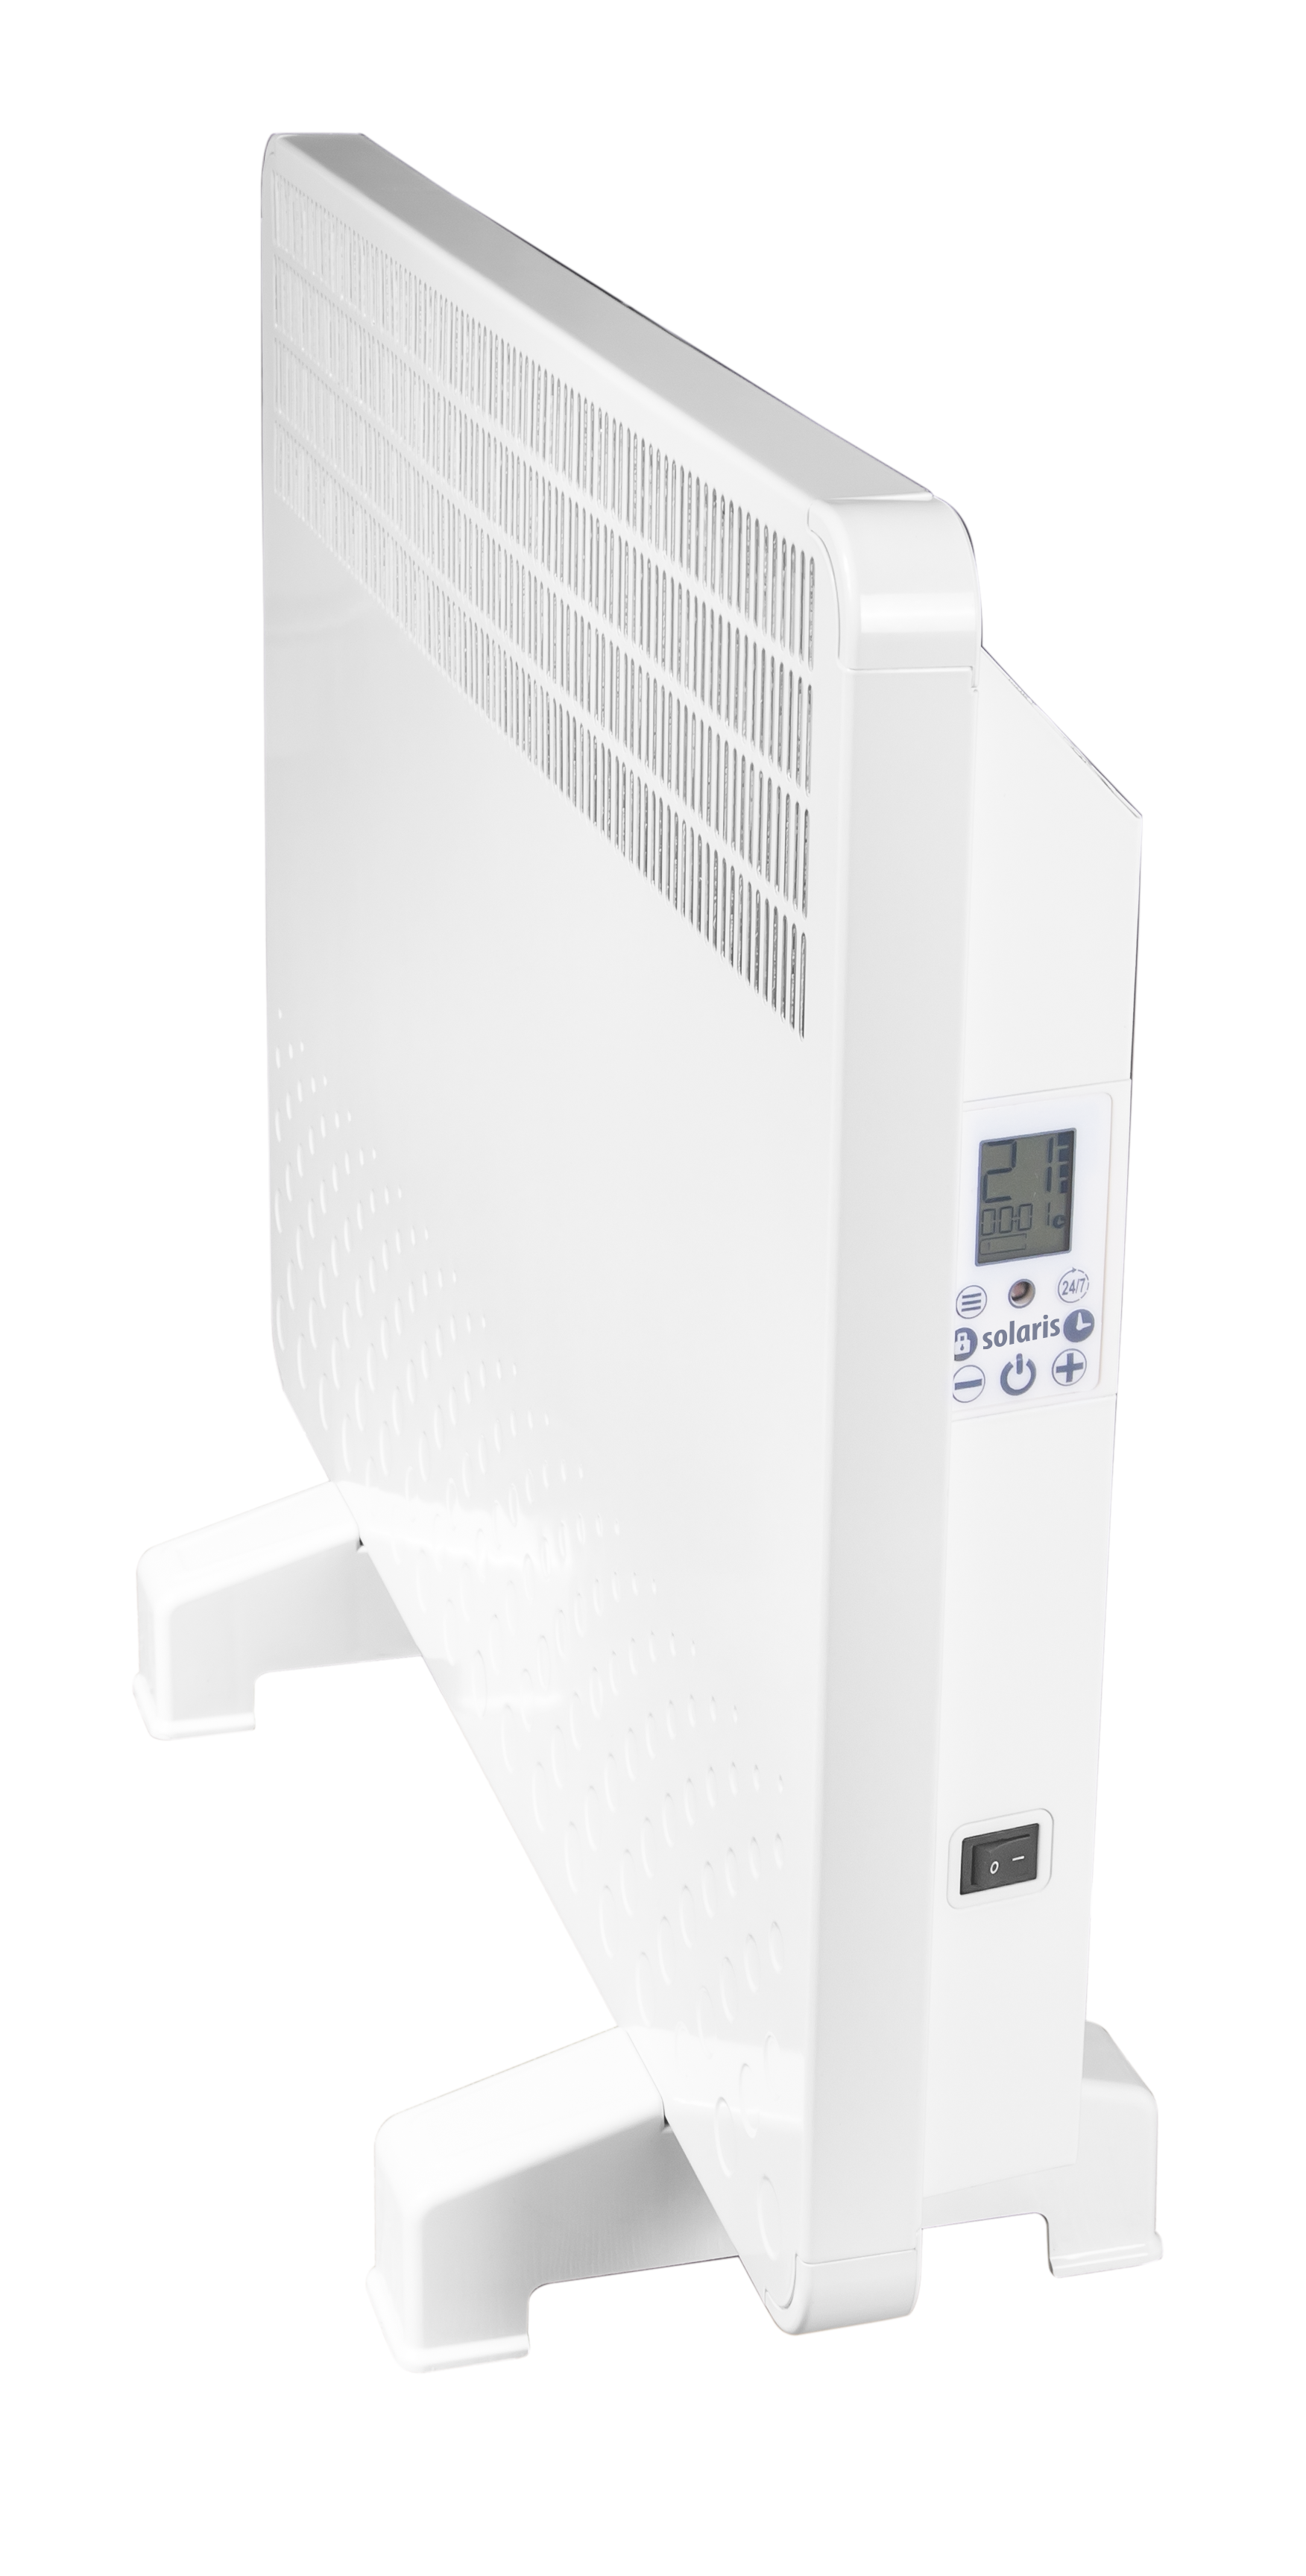 Convector electric de perete sau pardoseala Solaris KIP 1000 W, control electronic, Termostat de siguranta, termostat reglabil, IP 24, ERP 2018, pana la 12 mp Fornello imagine noua